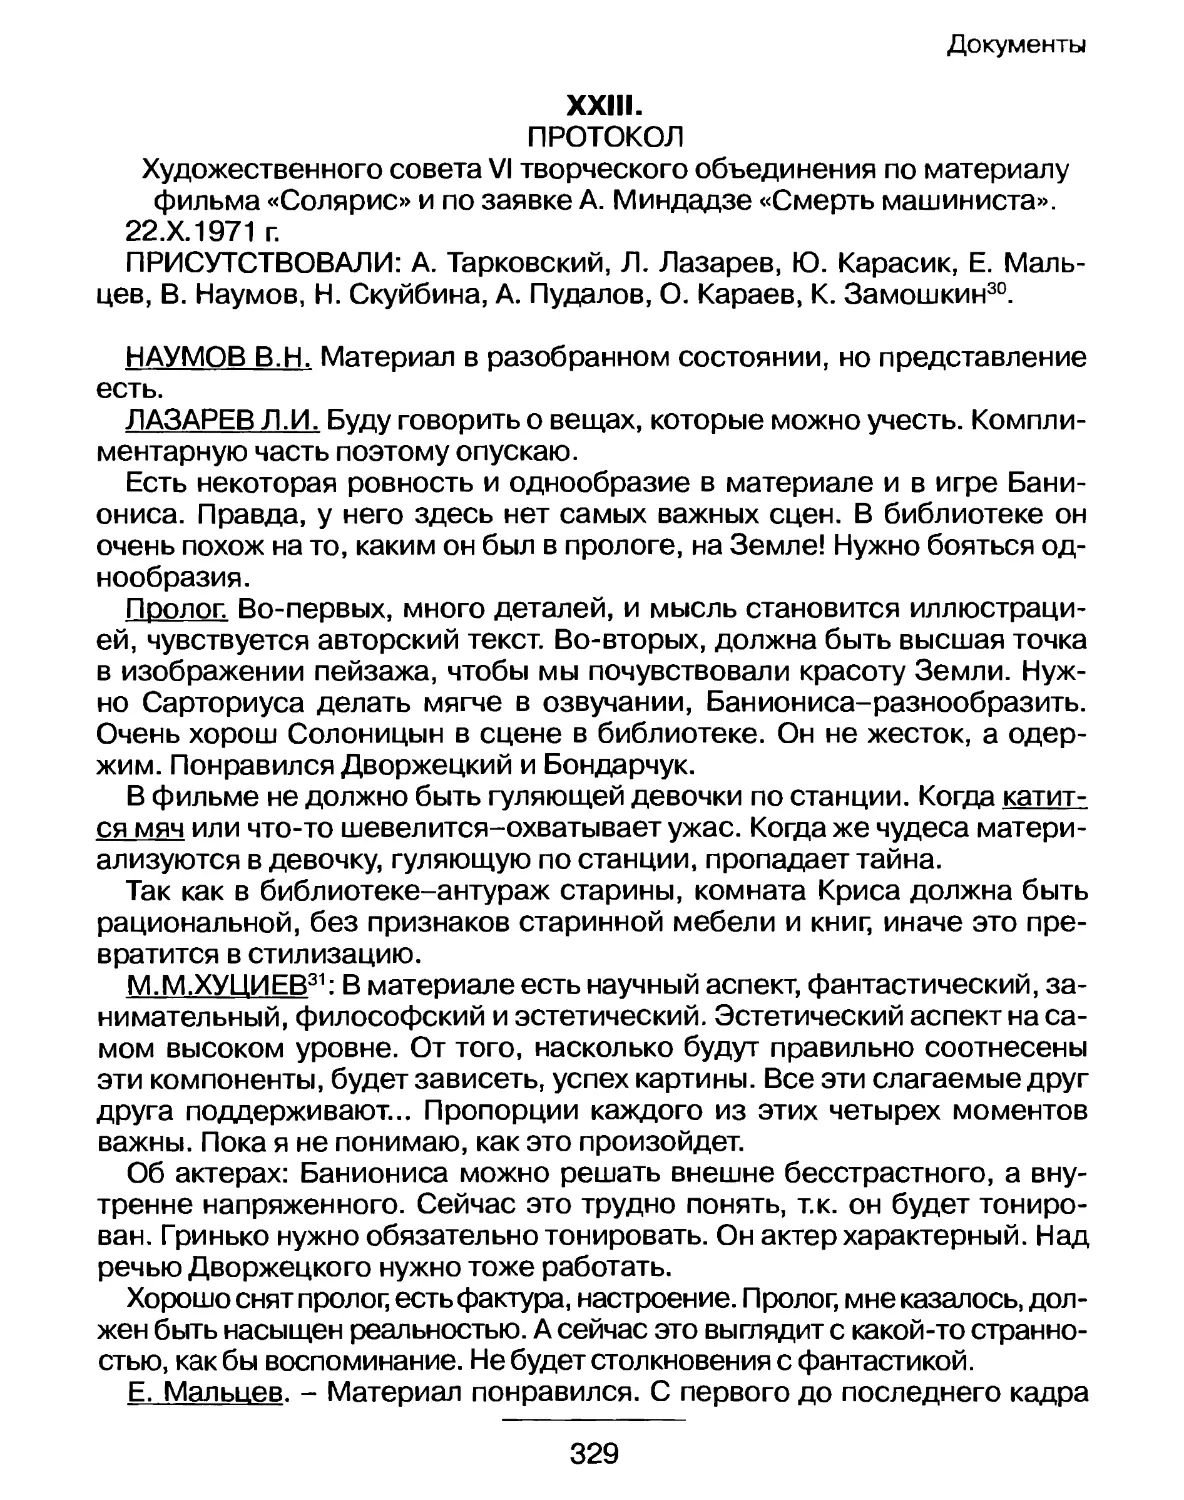 Протокол Художественного совета VI творческого объединения по материалу фильма «Солярис» и по заявке А. Миндадзе «Смерть машиниста» от 22 октября 1971 г.